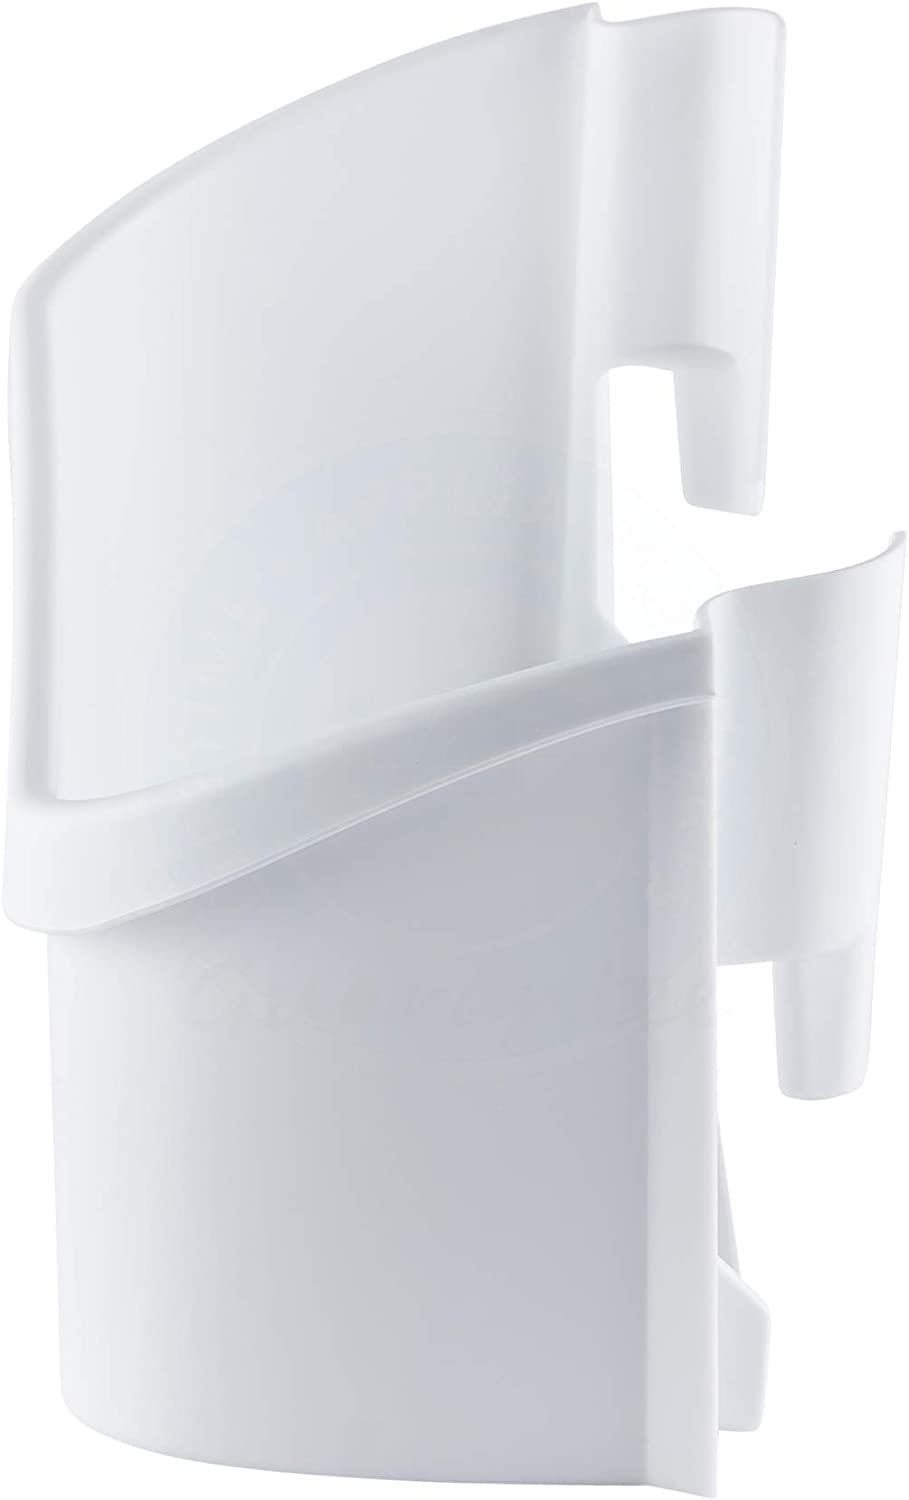 240363701 Door Shelf Rack Compatible with Frigidaire Refrigerator (2)